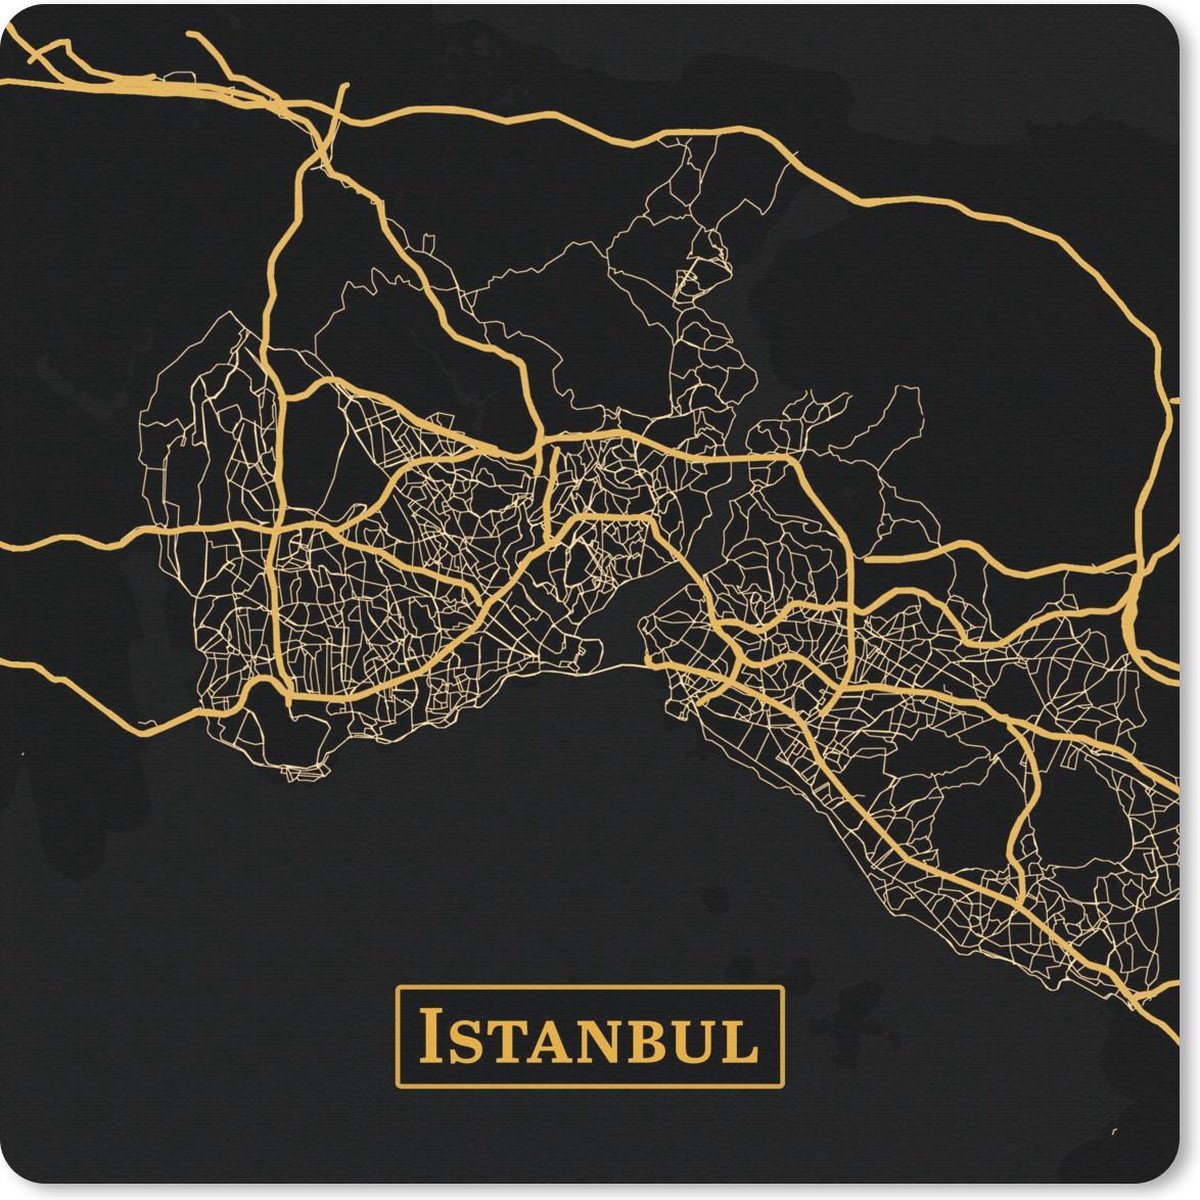 Muismat Klein - Kaart - Istanbul - Goud - Zwart - 20x20 cm